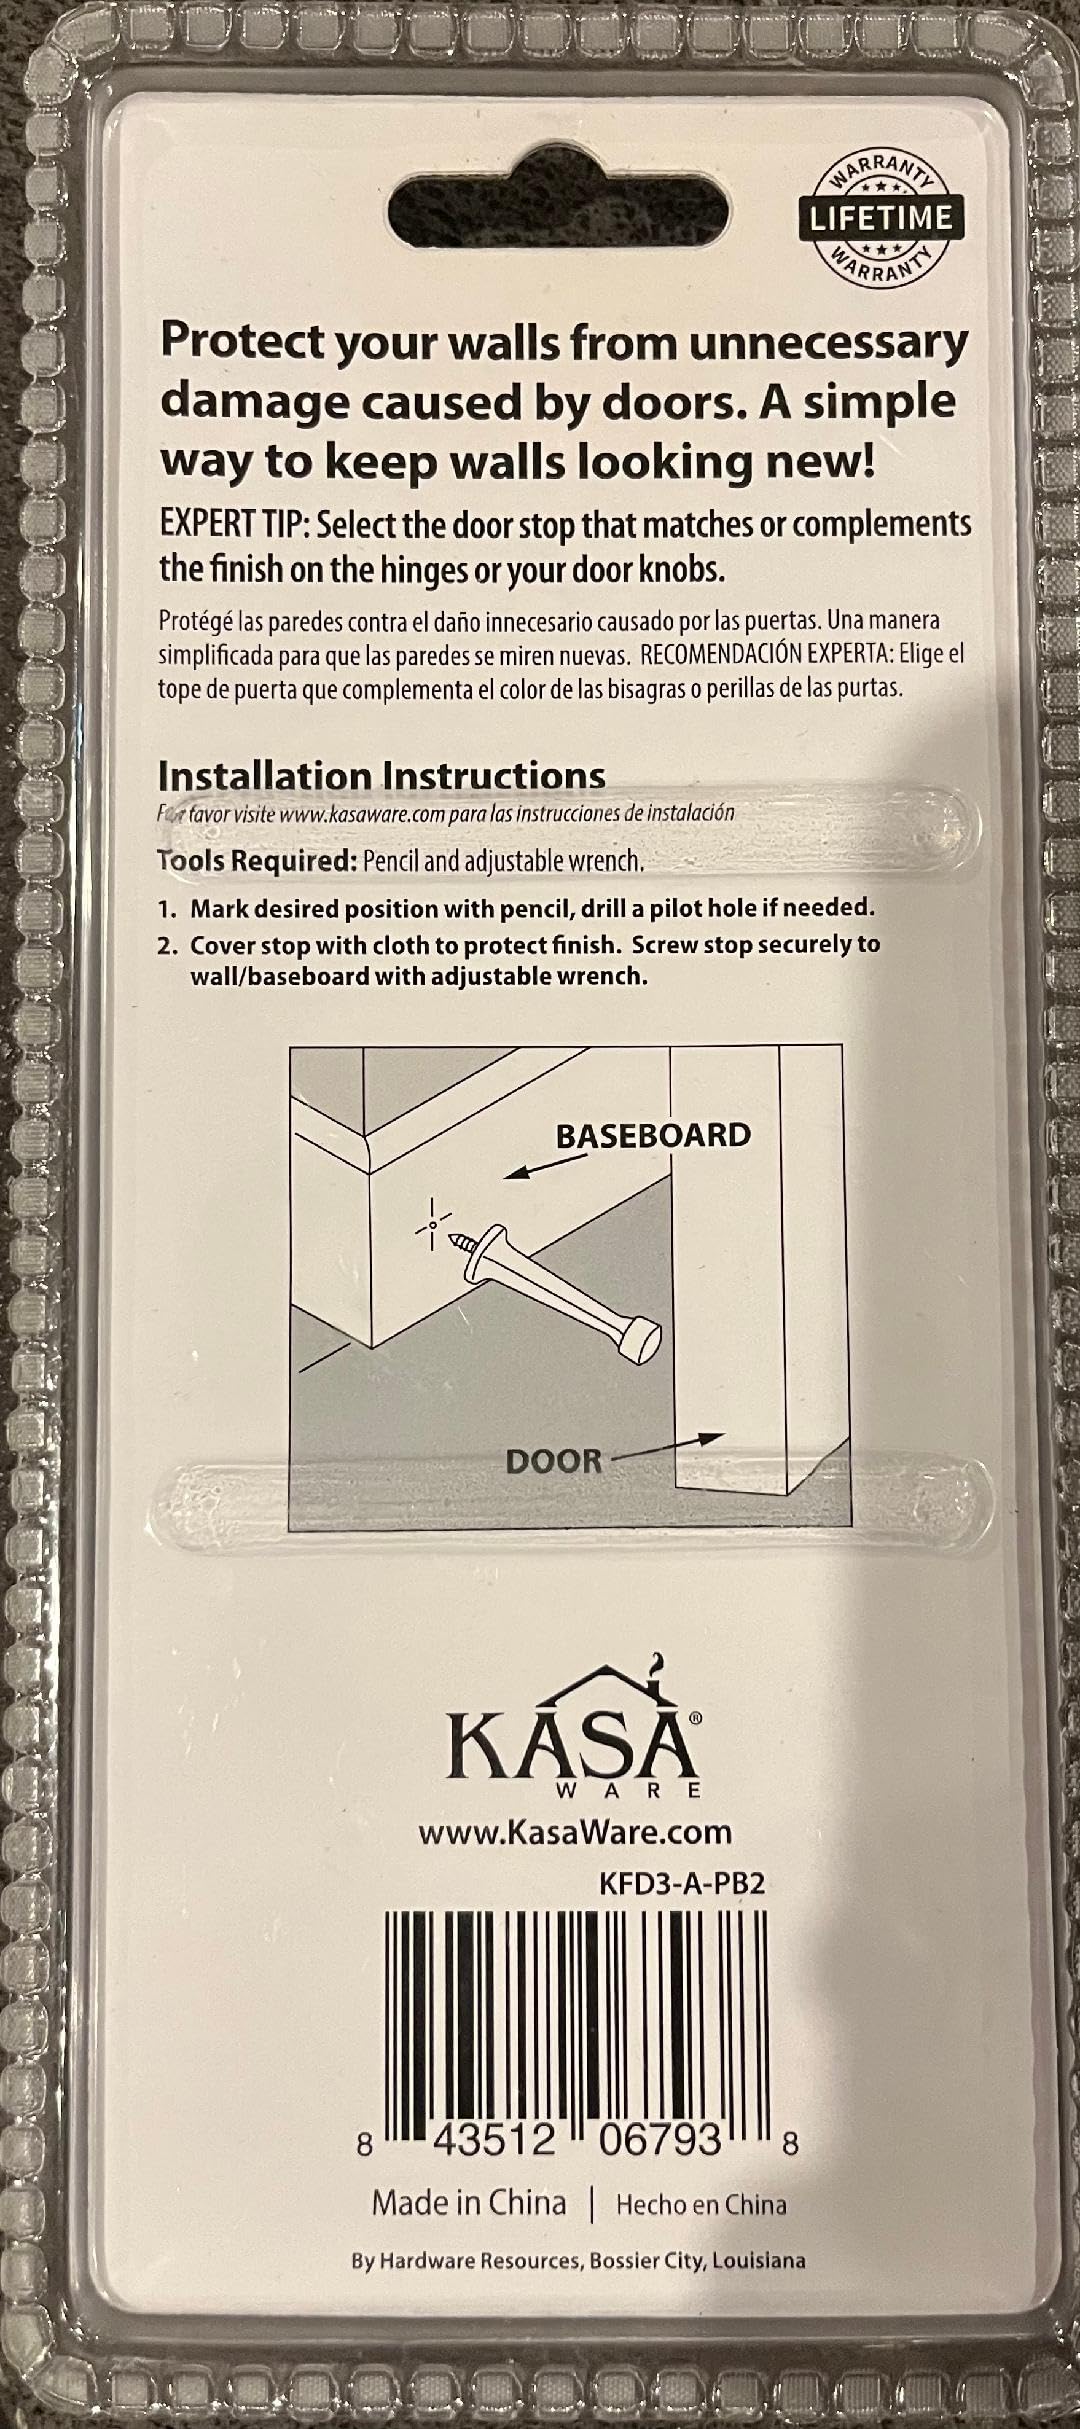 KasaWare KFD3-A-PB2 Rigid Door Stop, 2-pack